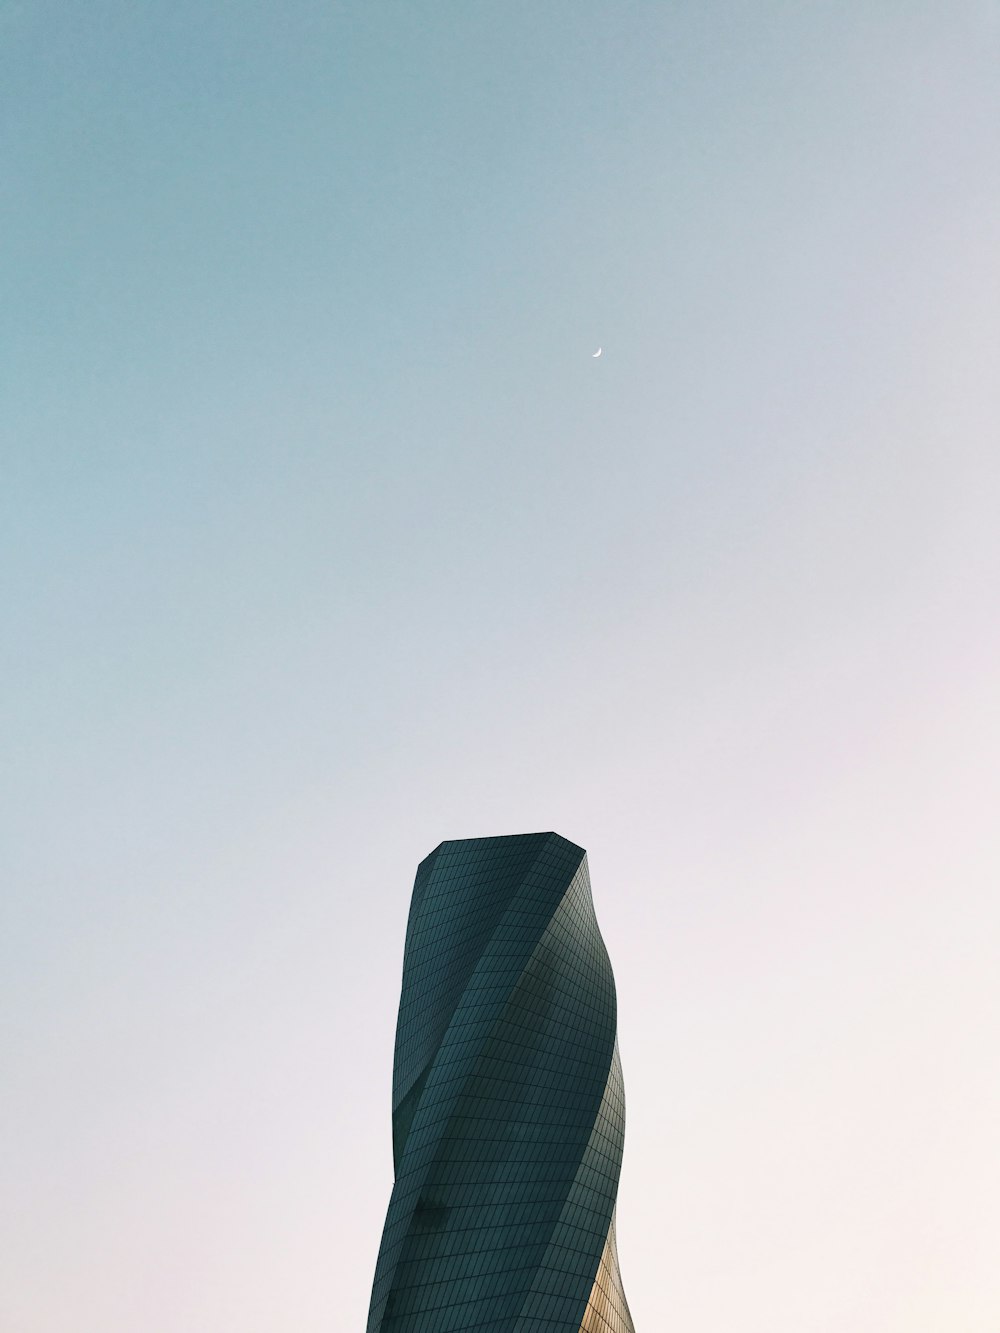 맑은 하늘 아래 회색 타워의 웜 아이 뷰 사진